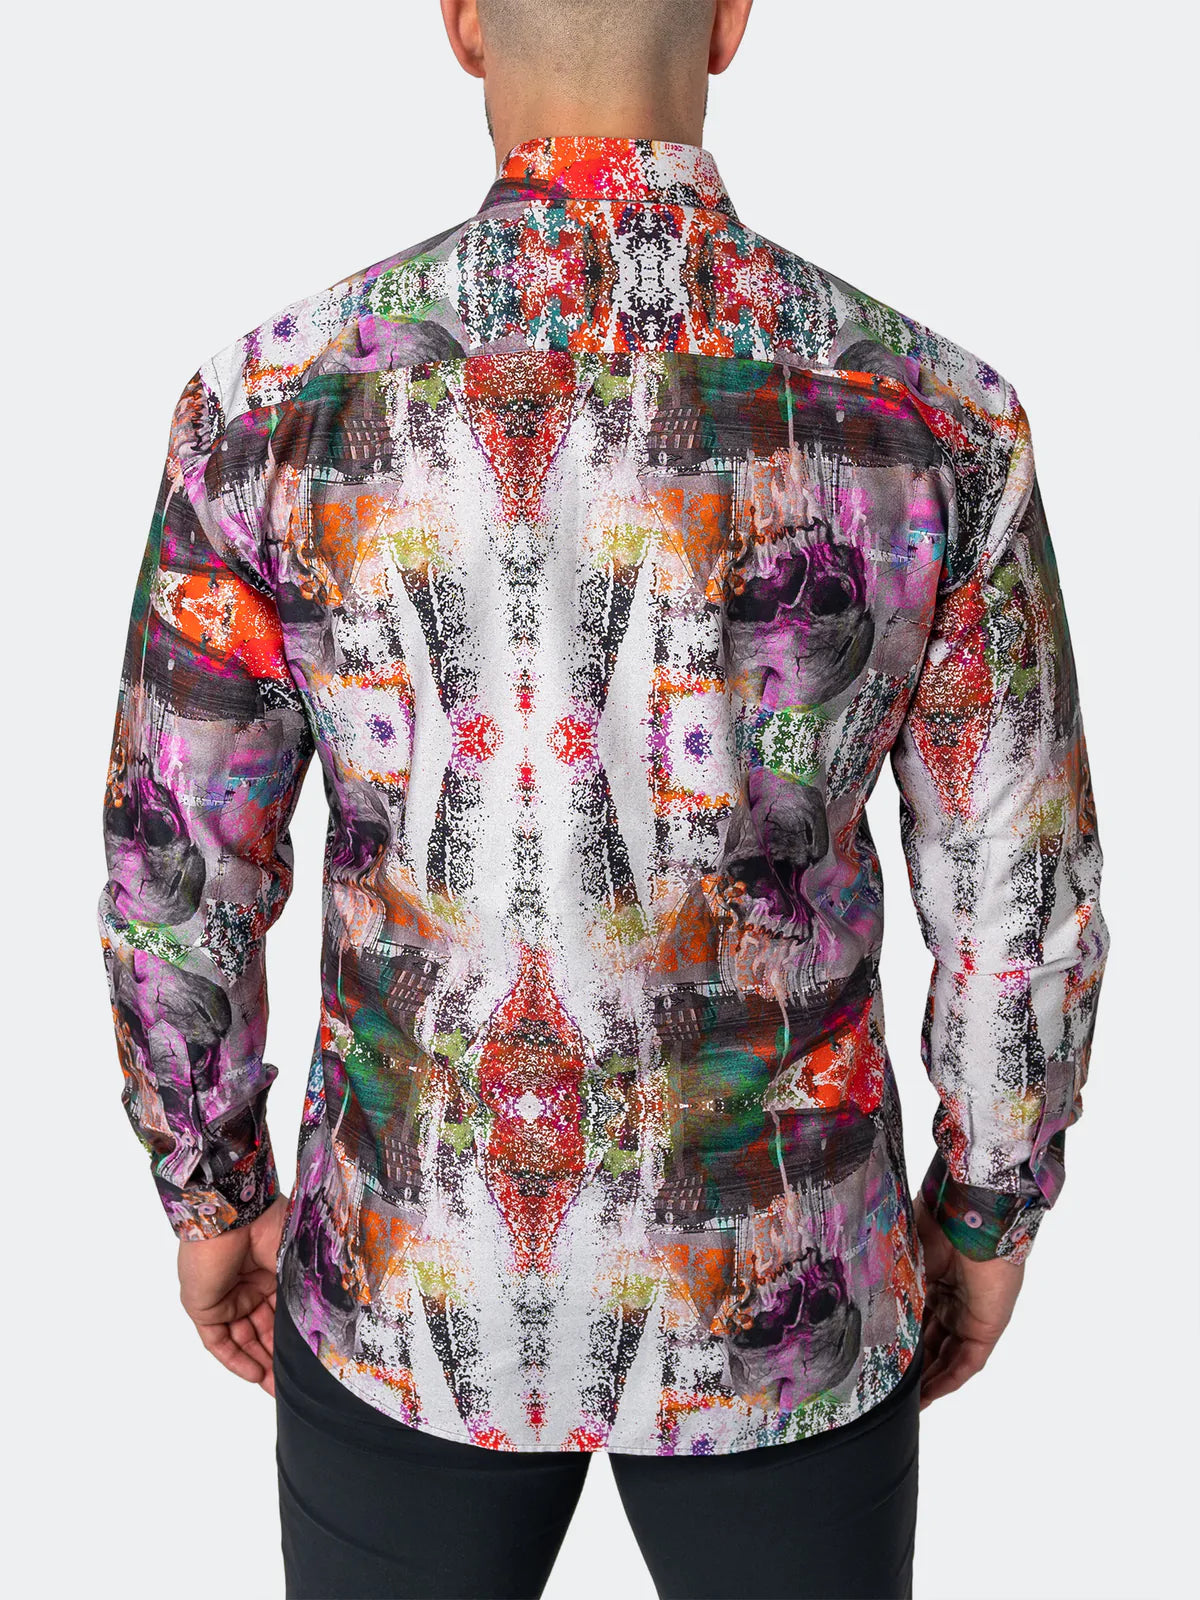 Maceoo Fibonacci Long Sleeve Dress Shirt Skull Scramble Print Multi